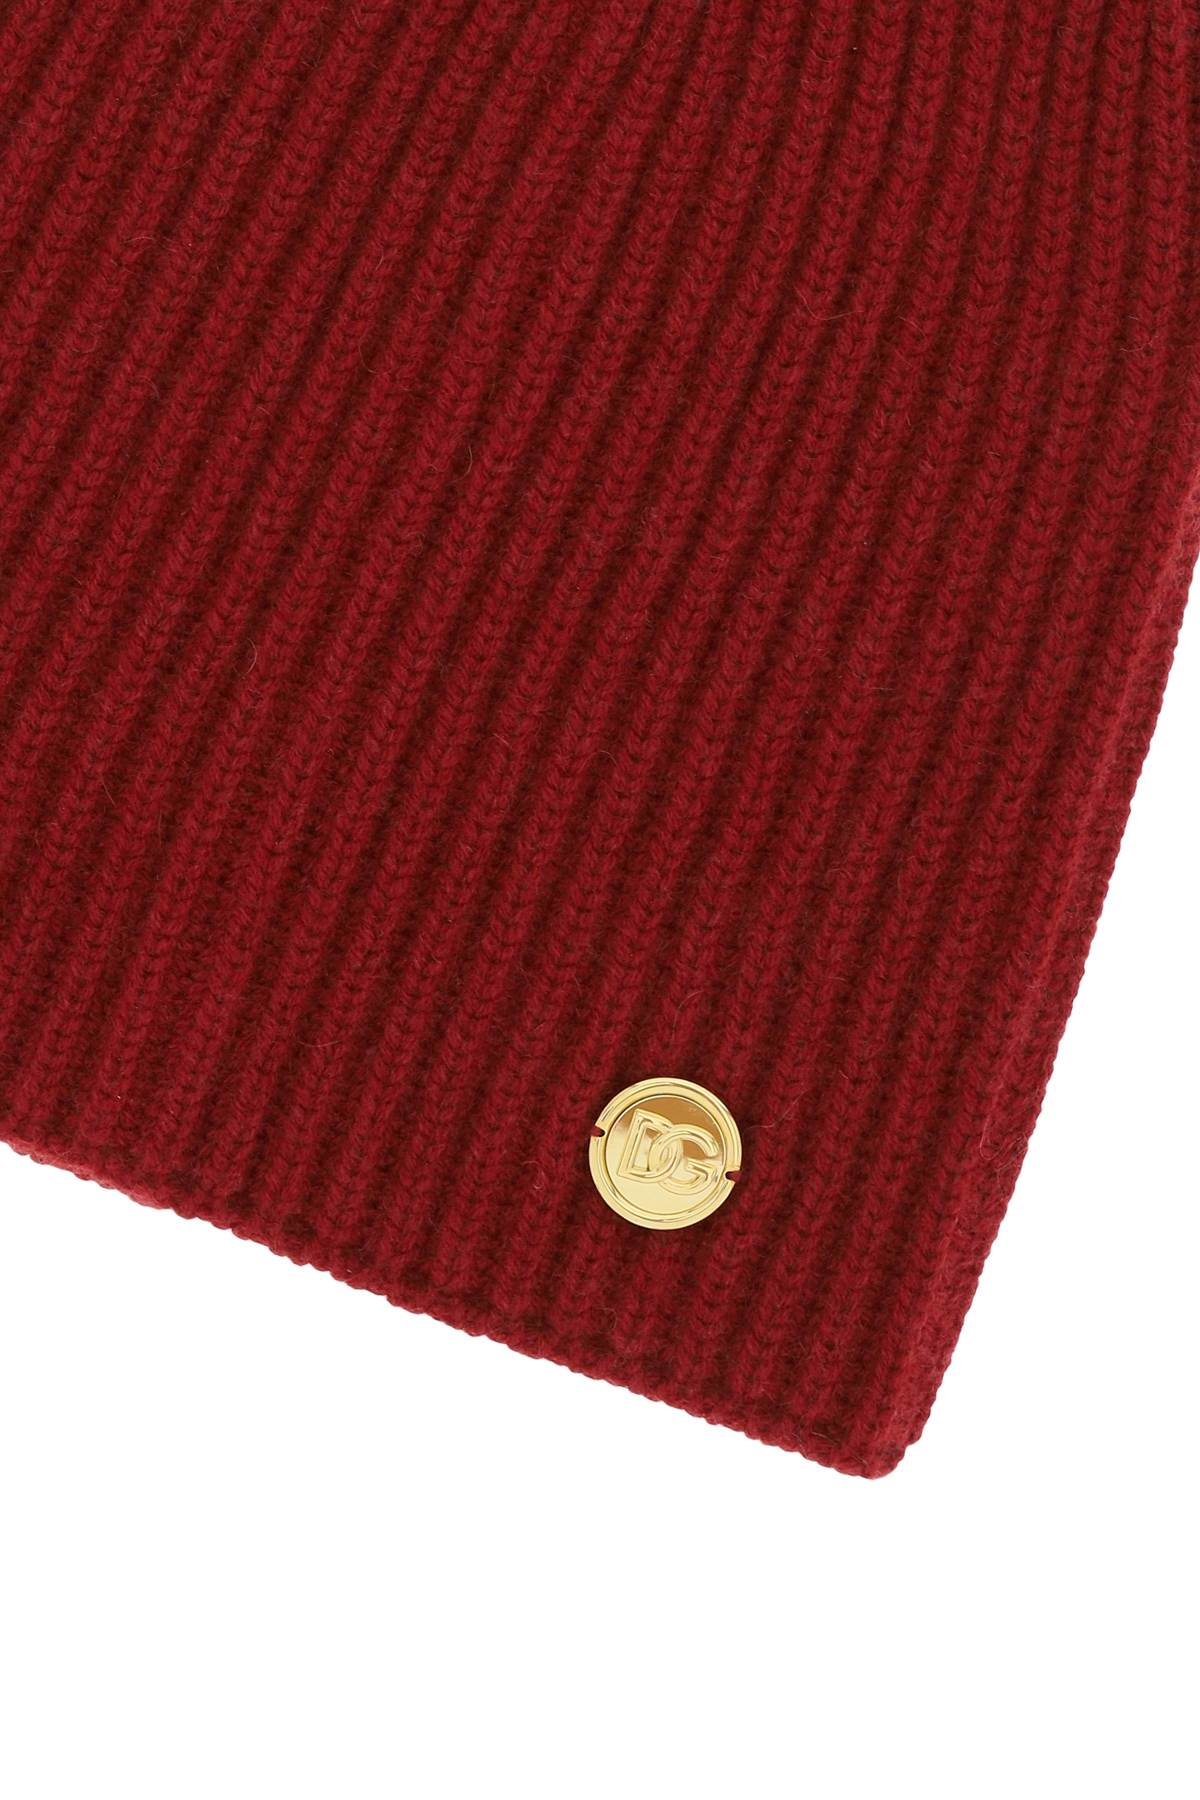 Dolce &amp; Gabbana Cashmere Beanie Hat   Red